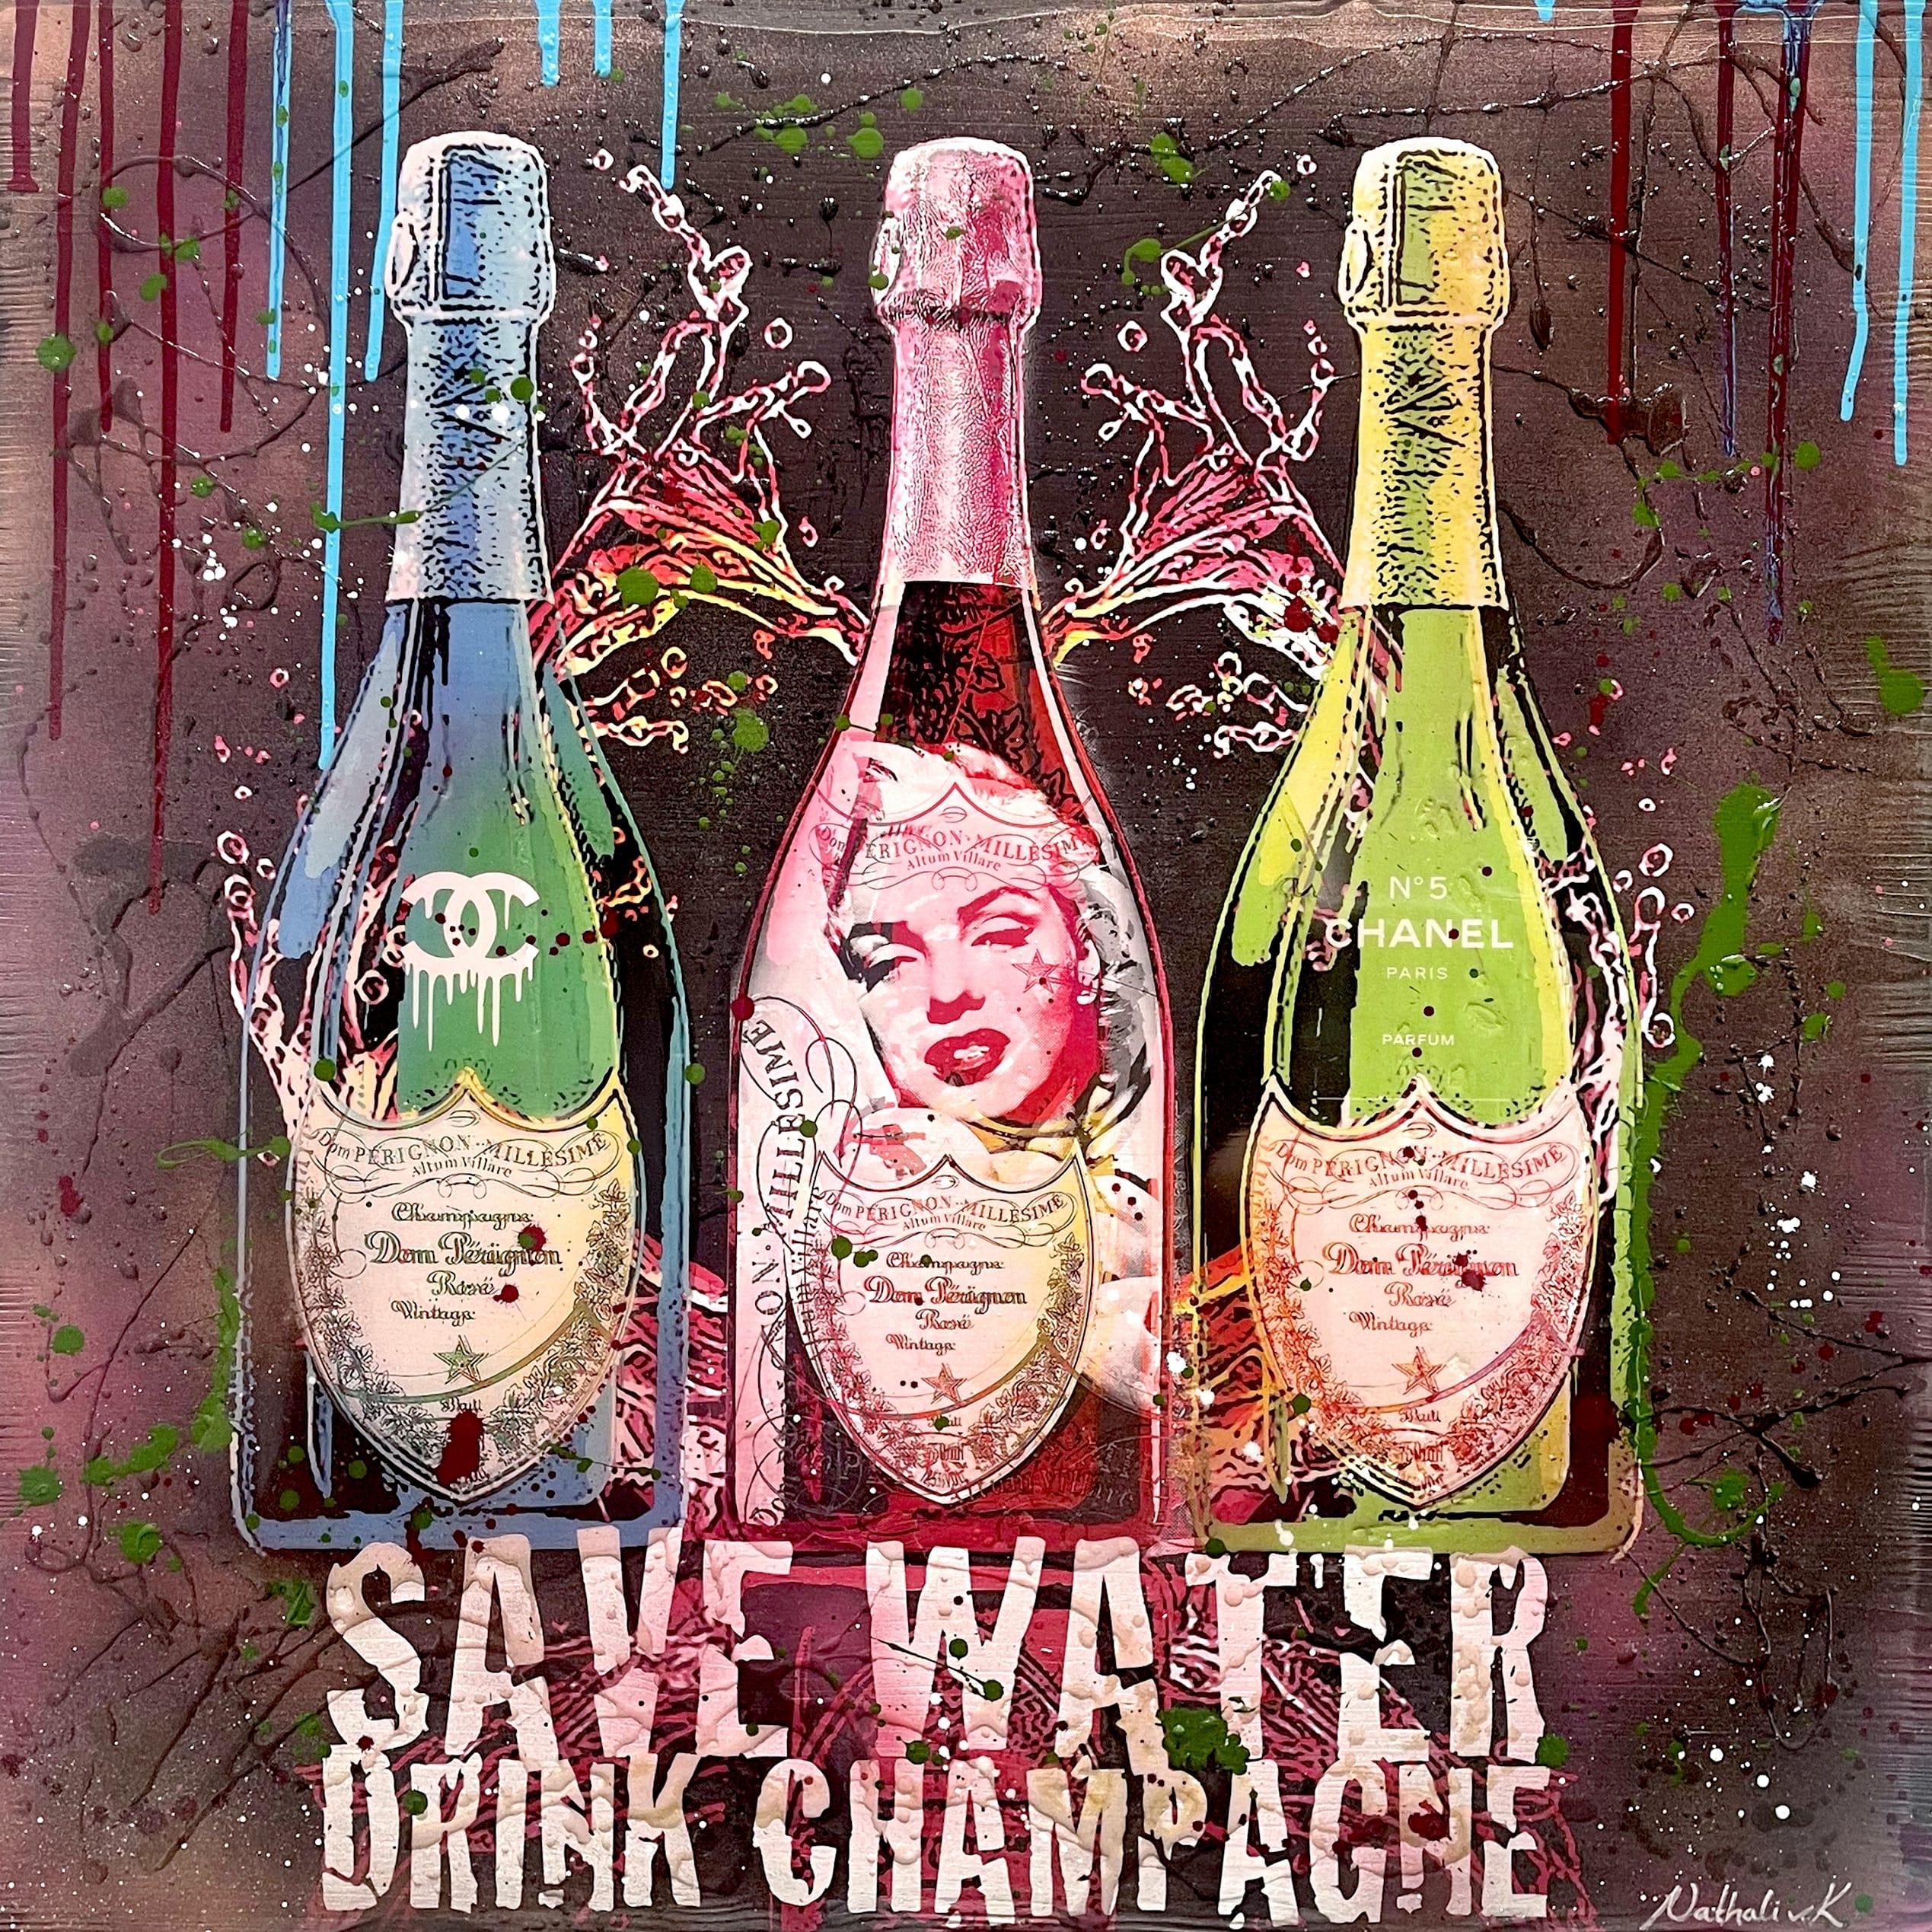 Nathali von Kretschmann Pop-Up Painting "Save Water Drink Champagne" tre bottiglie di Dom Perignon